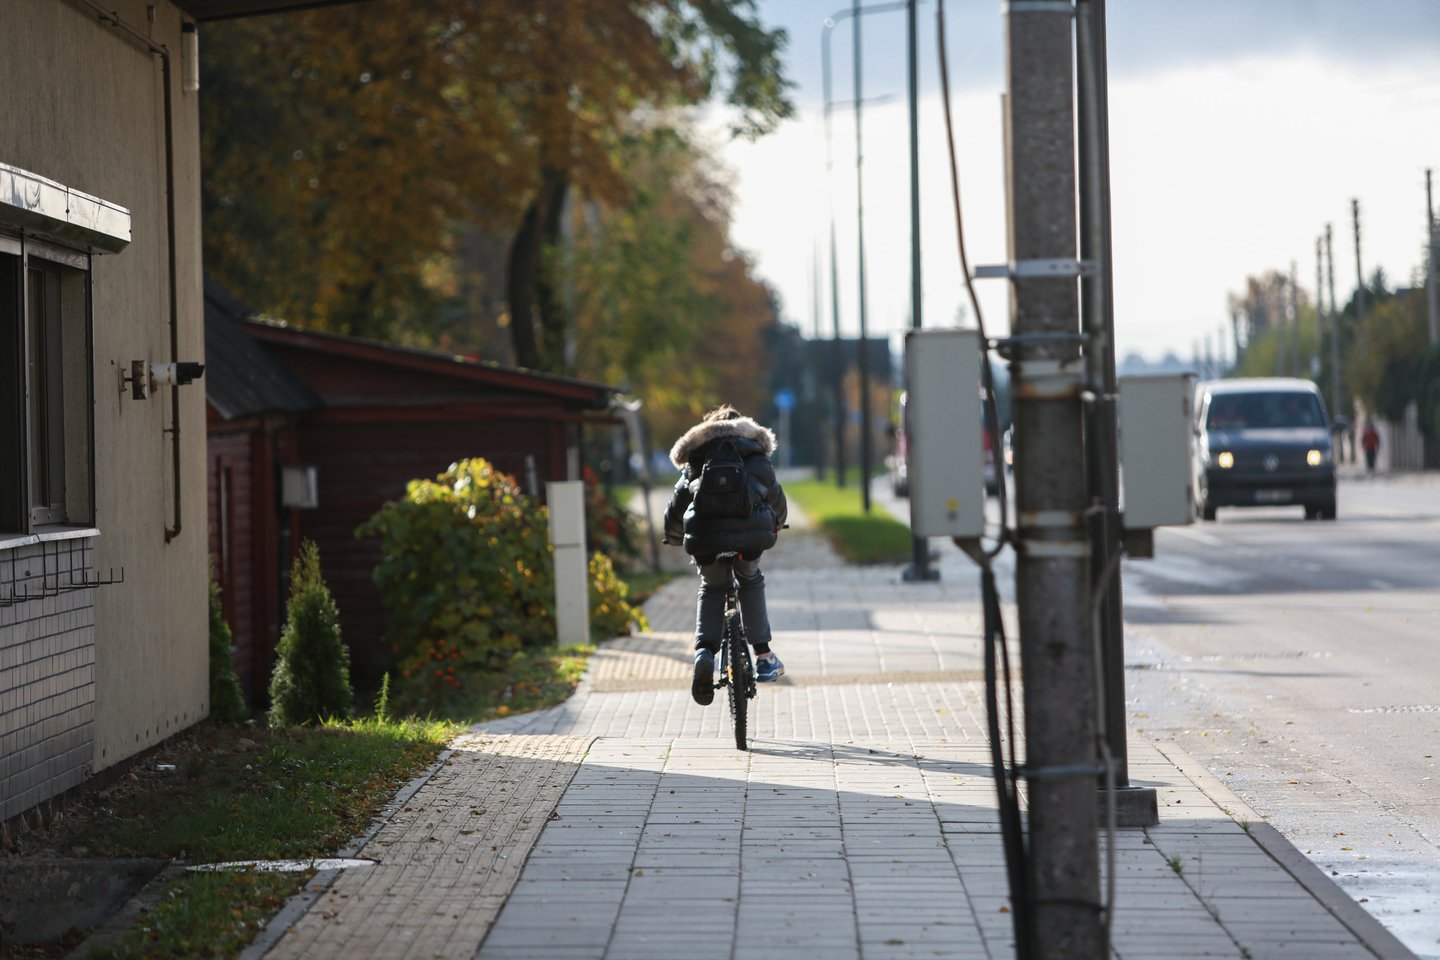 Per dešimtmetį dviračių takų tinklas turėtų išsiplėsti nuo dabartinių 3 tūkst. iki 5 tūkst. kilometrų, prioritetas bus skiriamas sujungti atskirus takus į trasas, sako susisiekimo ministras Marius Skuodis.<br>G.Bitvinsko nuotr.